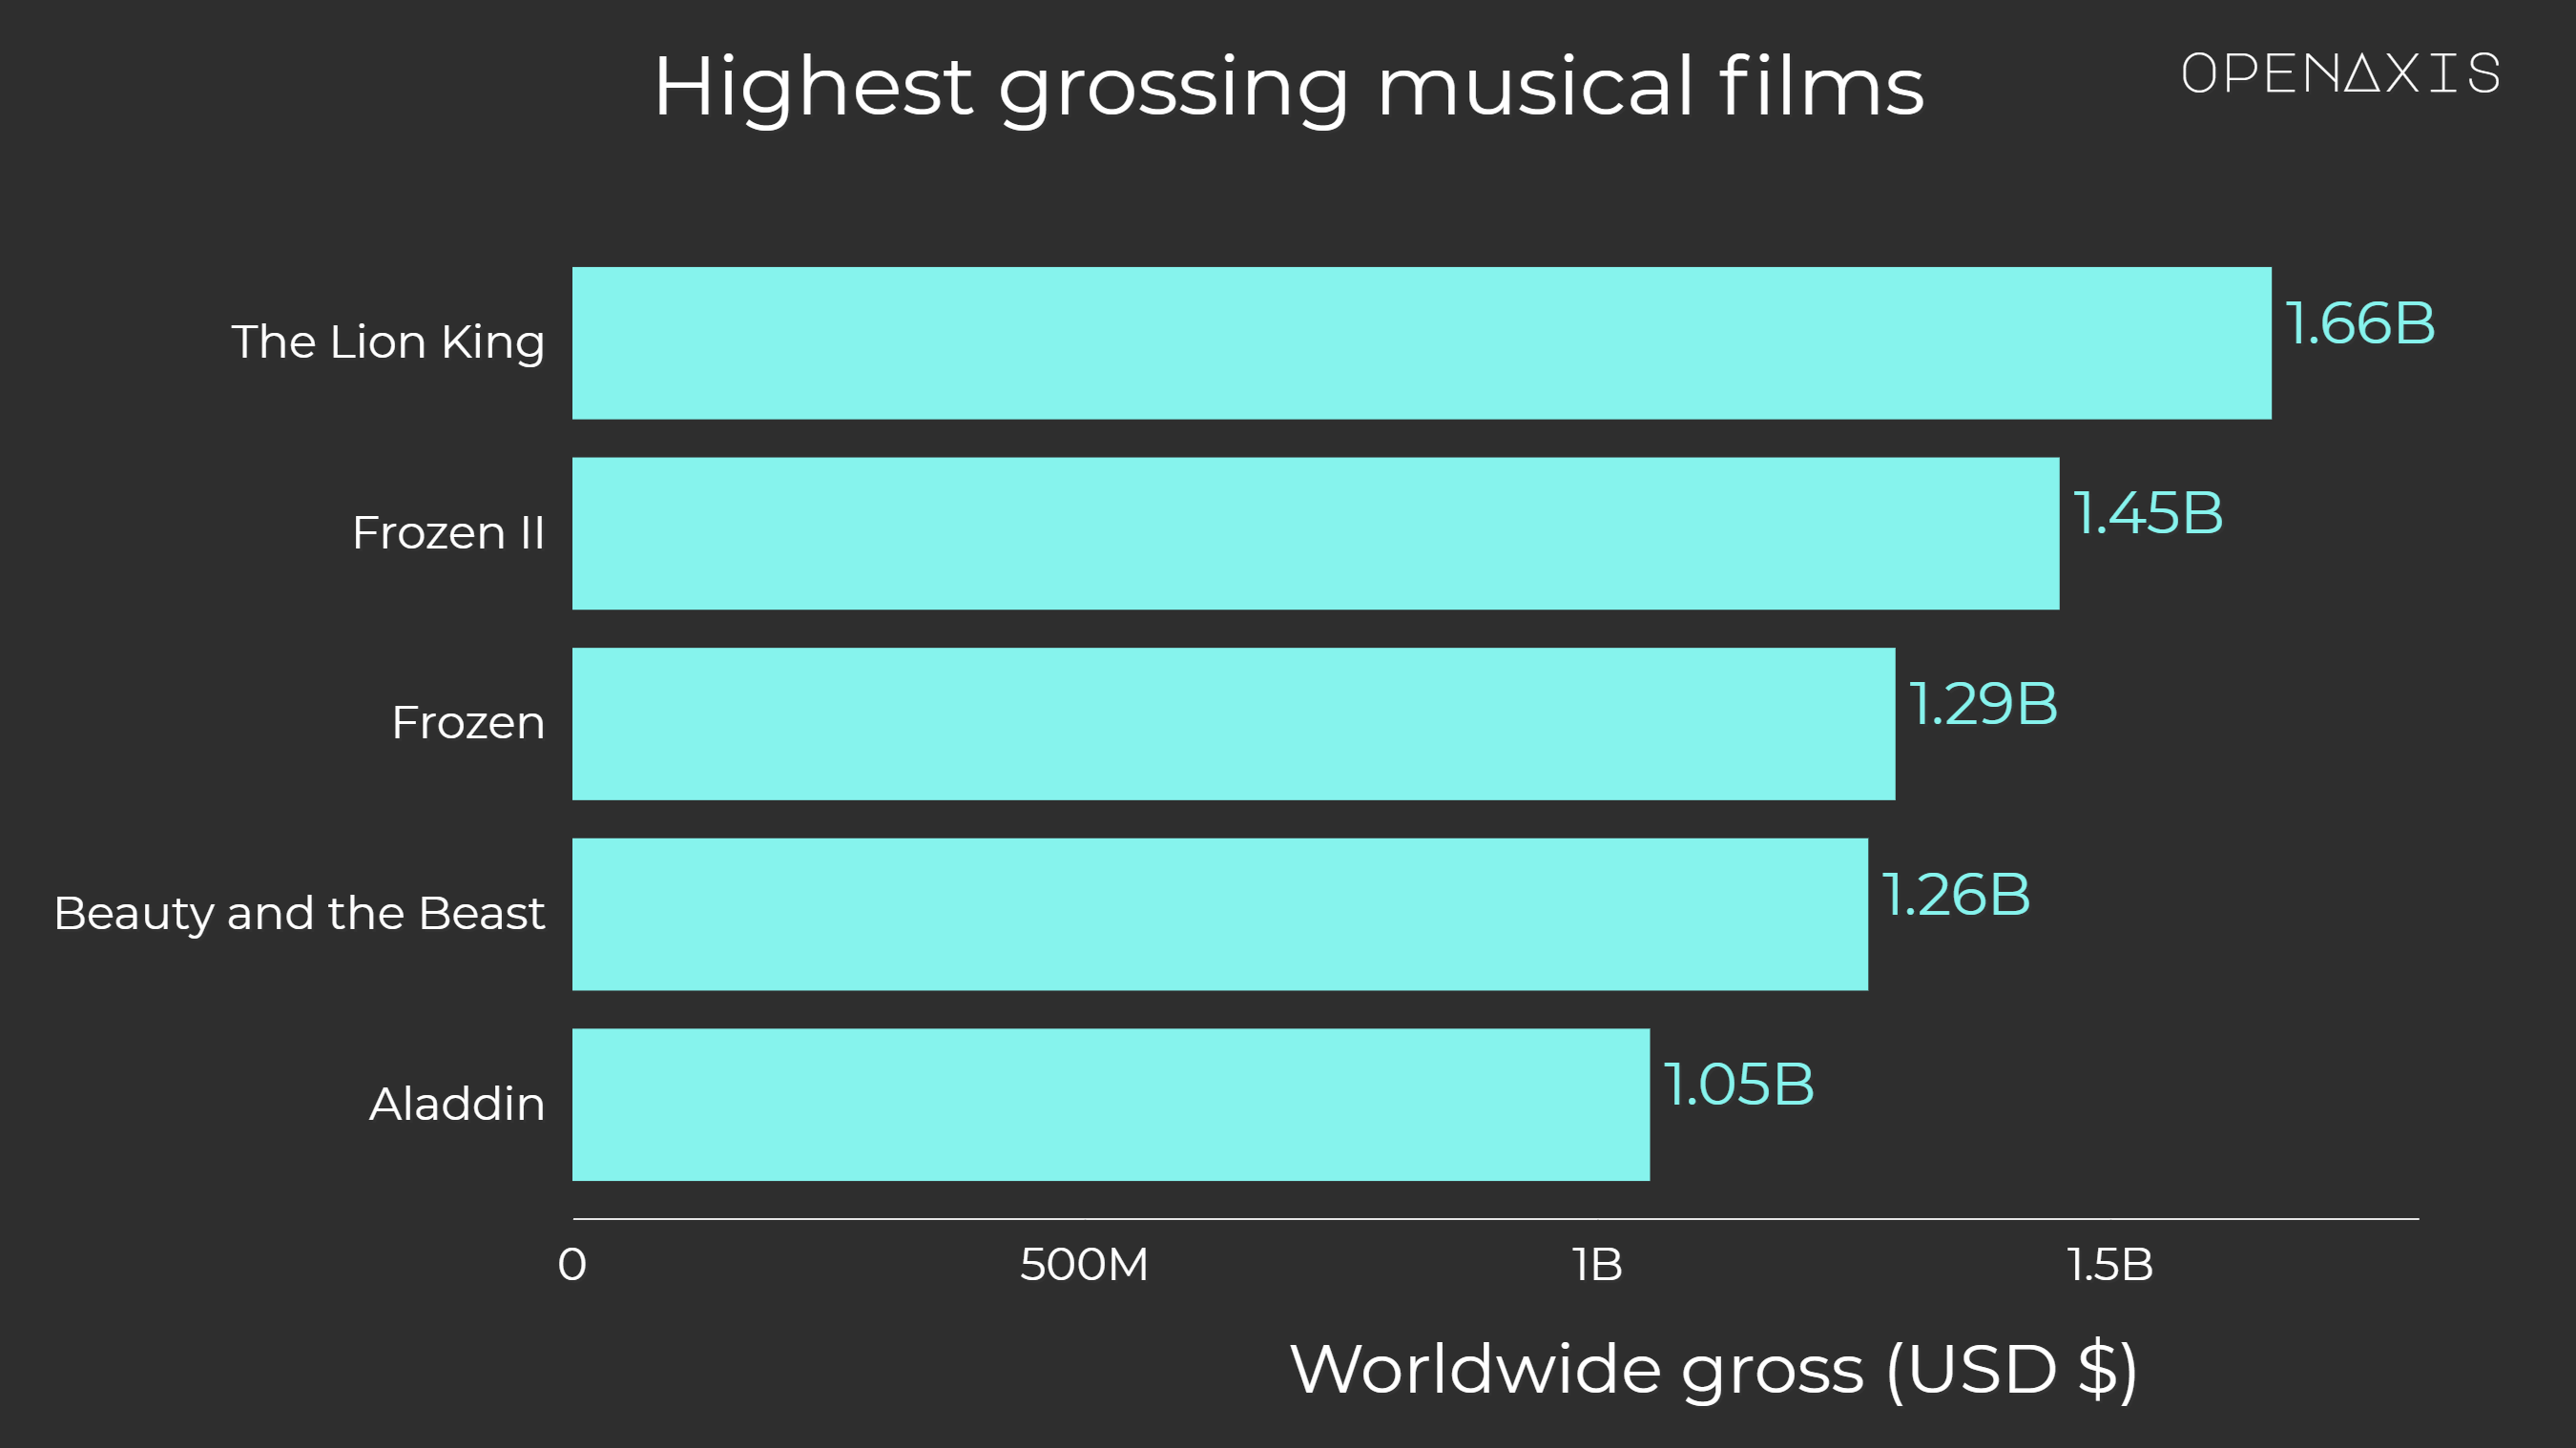 "Highest grossing musical films"